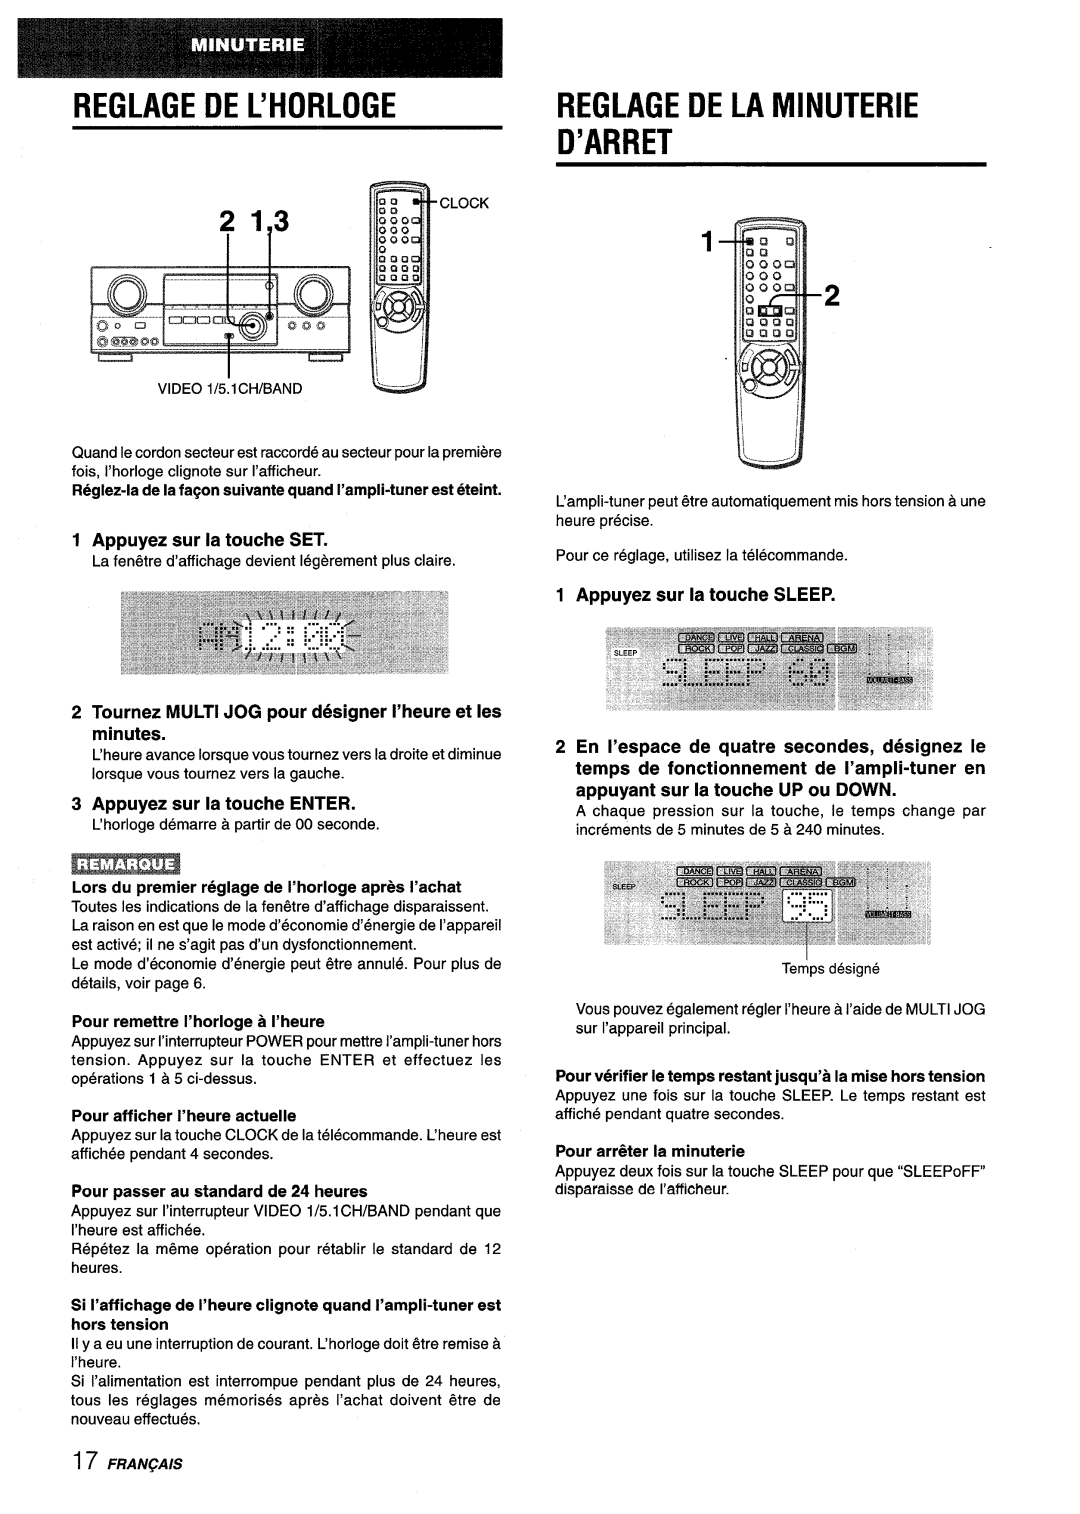 Aiwa AV-D35 manual Reglagedel’Horloge, 3EGLAGE DE LA IVIINUTERIE I’ARRET, 213 I, Appuyez sur la touche SET 